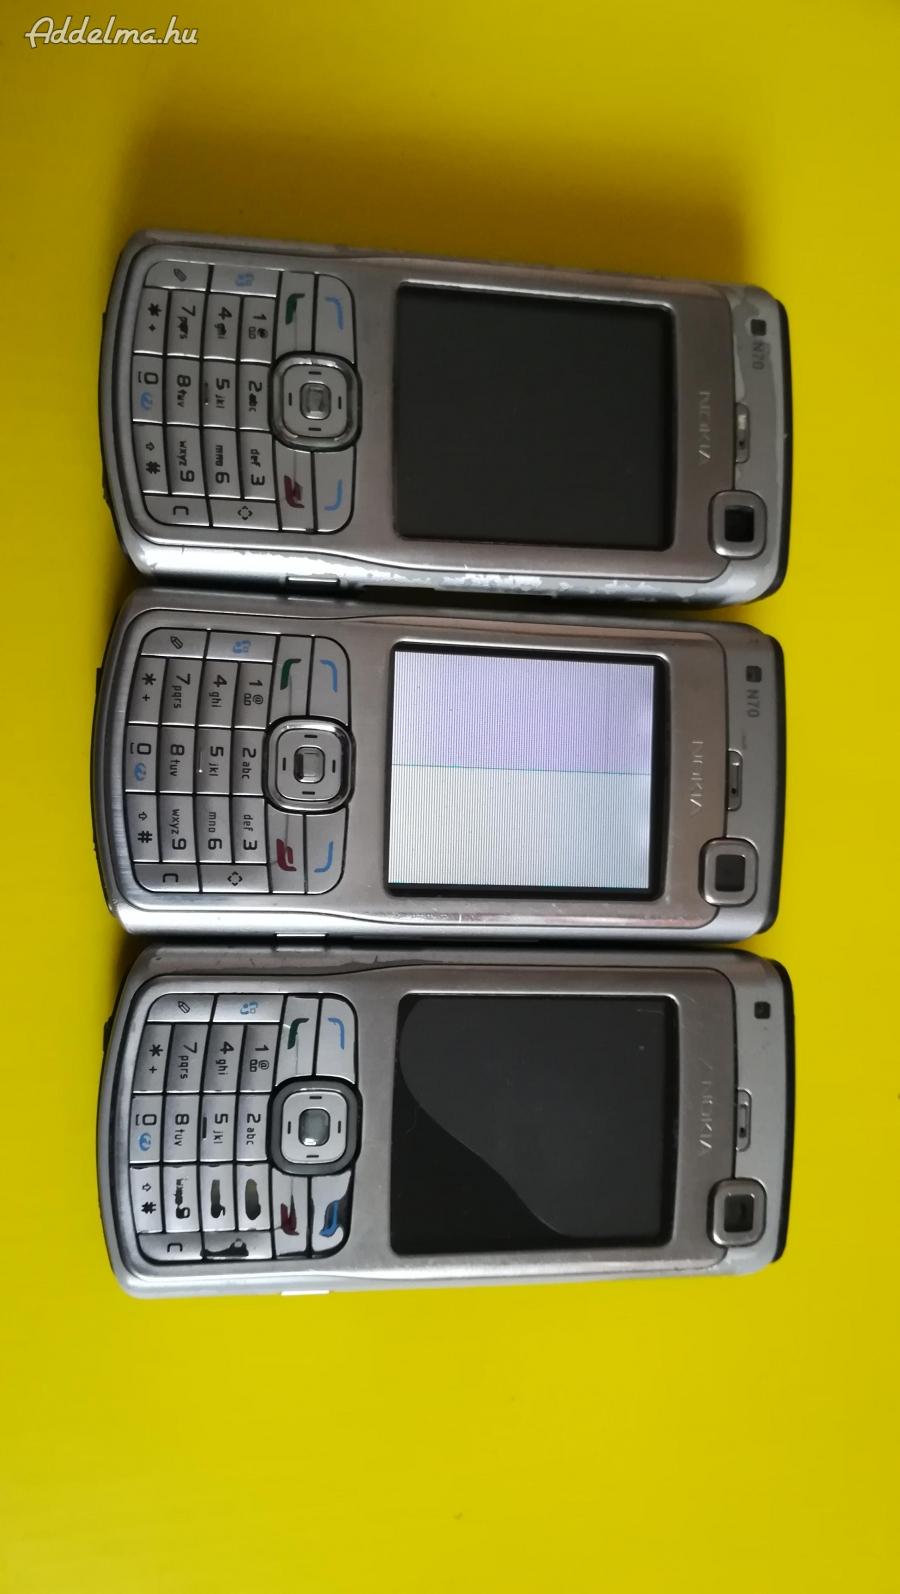 Nokia N70 mobil hibásak: képet nem ad